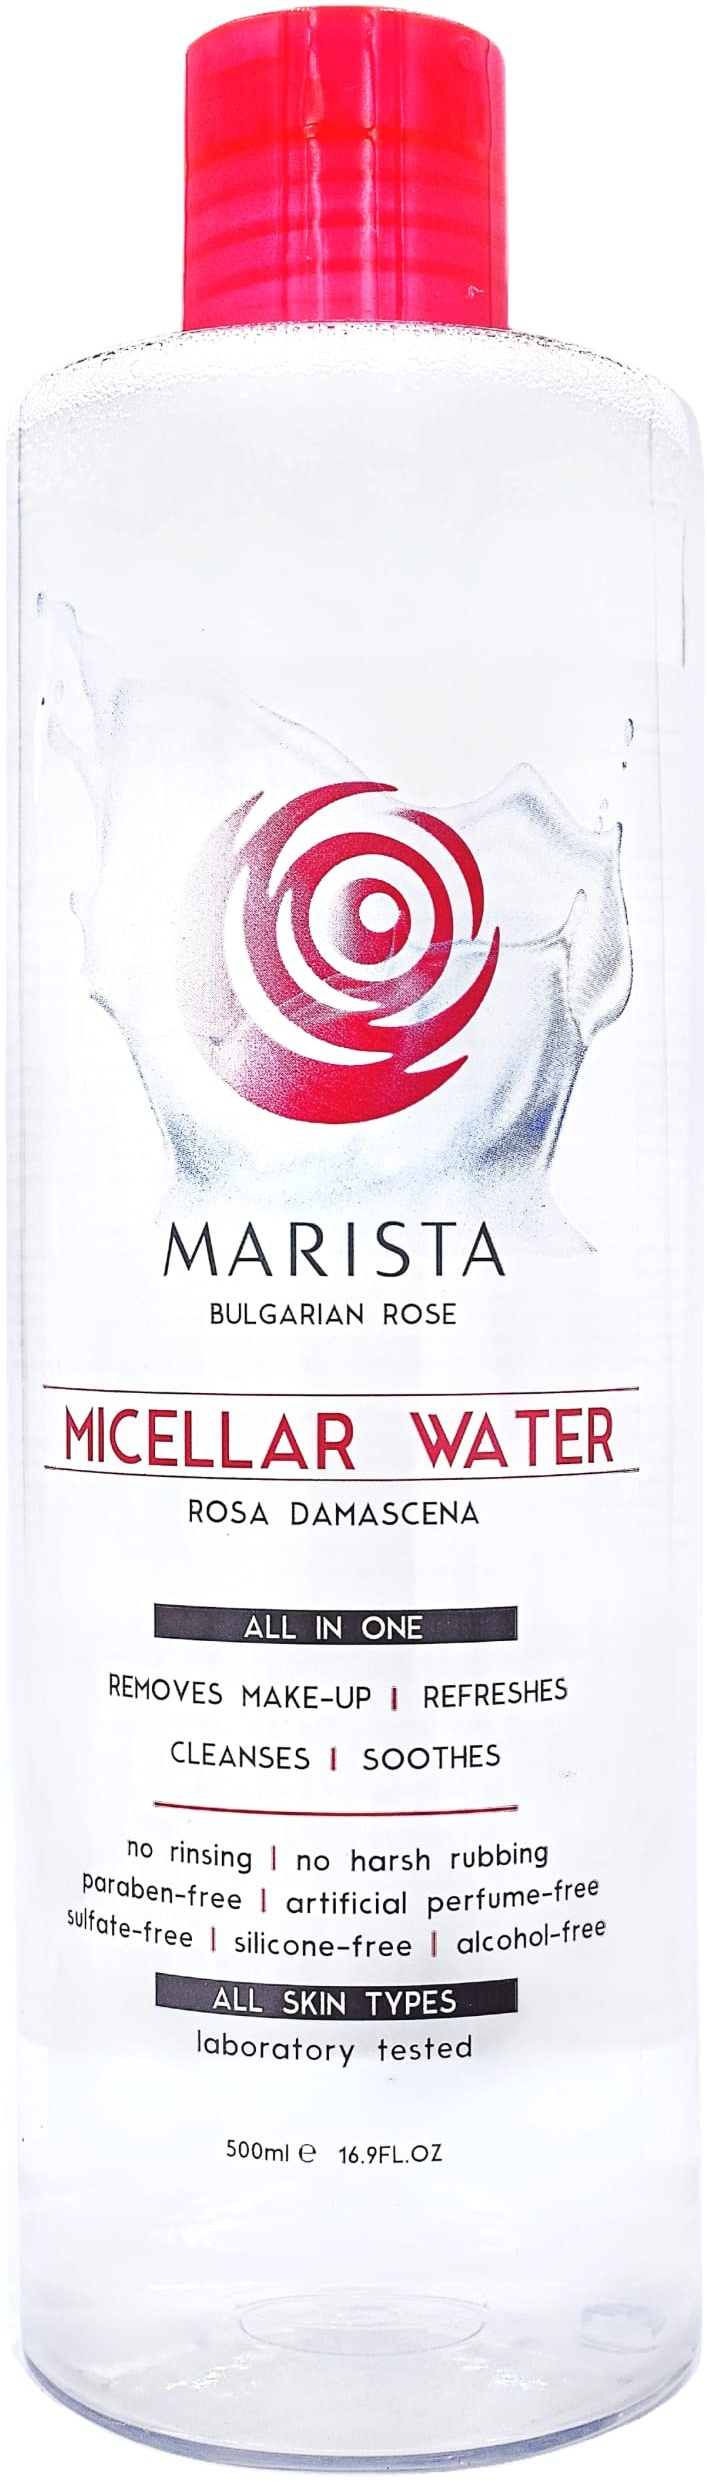 MARISTA Micellar Cleansing Water 500 ml., Make-up-Entferner für empfindliche Haut für Gesicht, Augen & Lippen, beruhigend mit Aloe Vera, Rosa Damascena & Kamillenextrakt